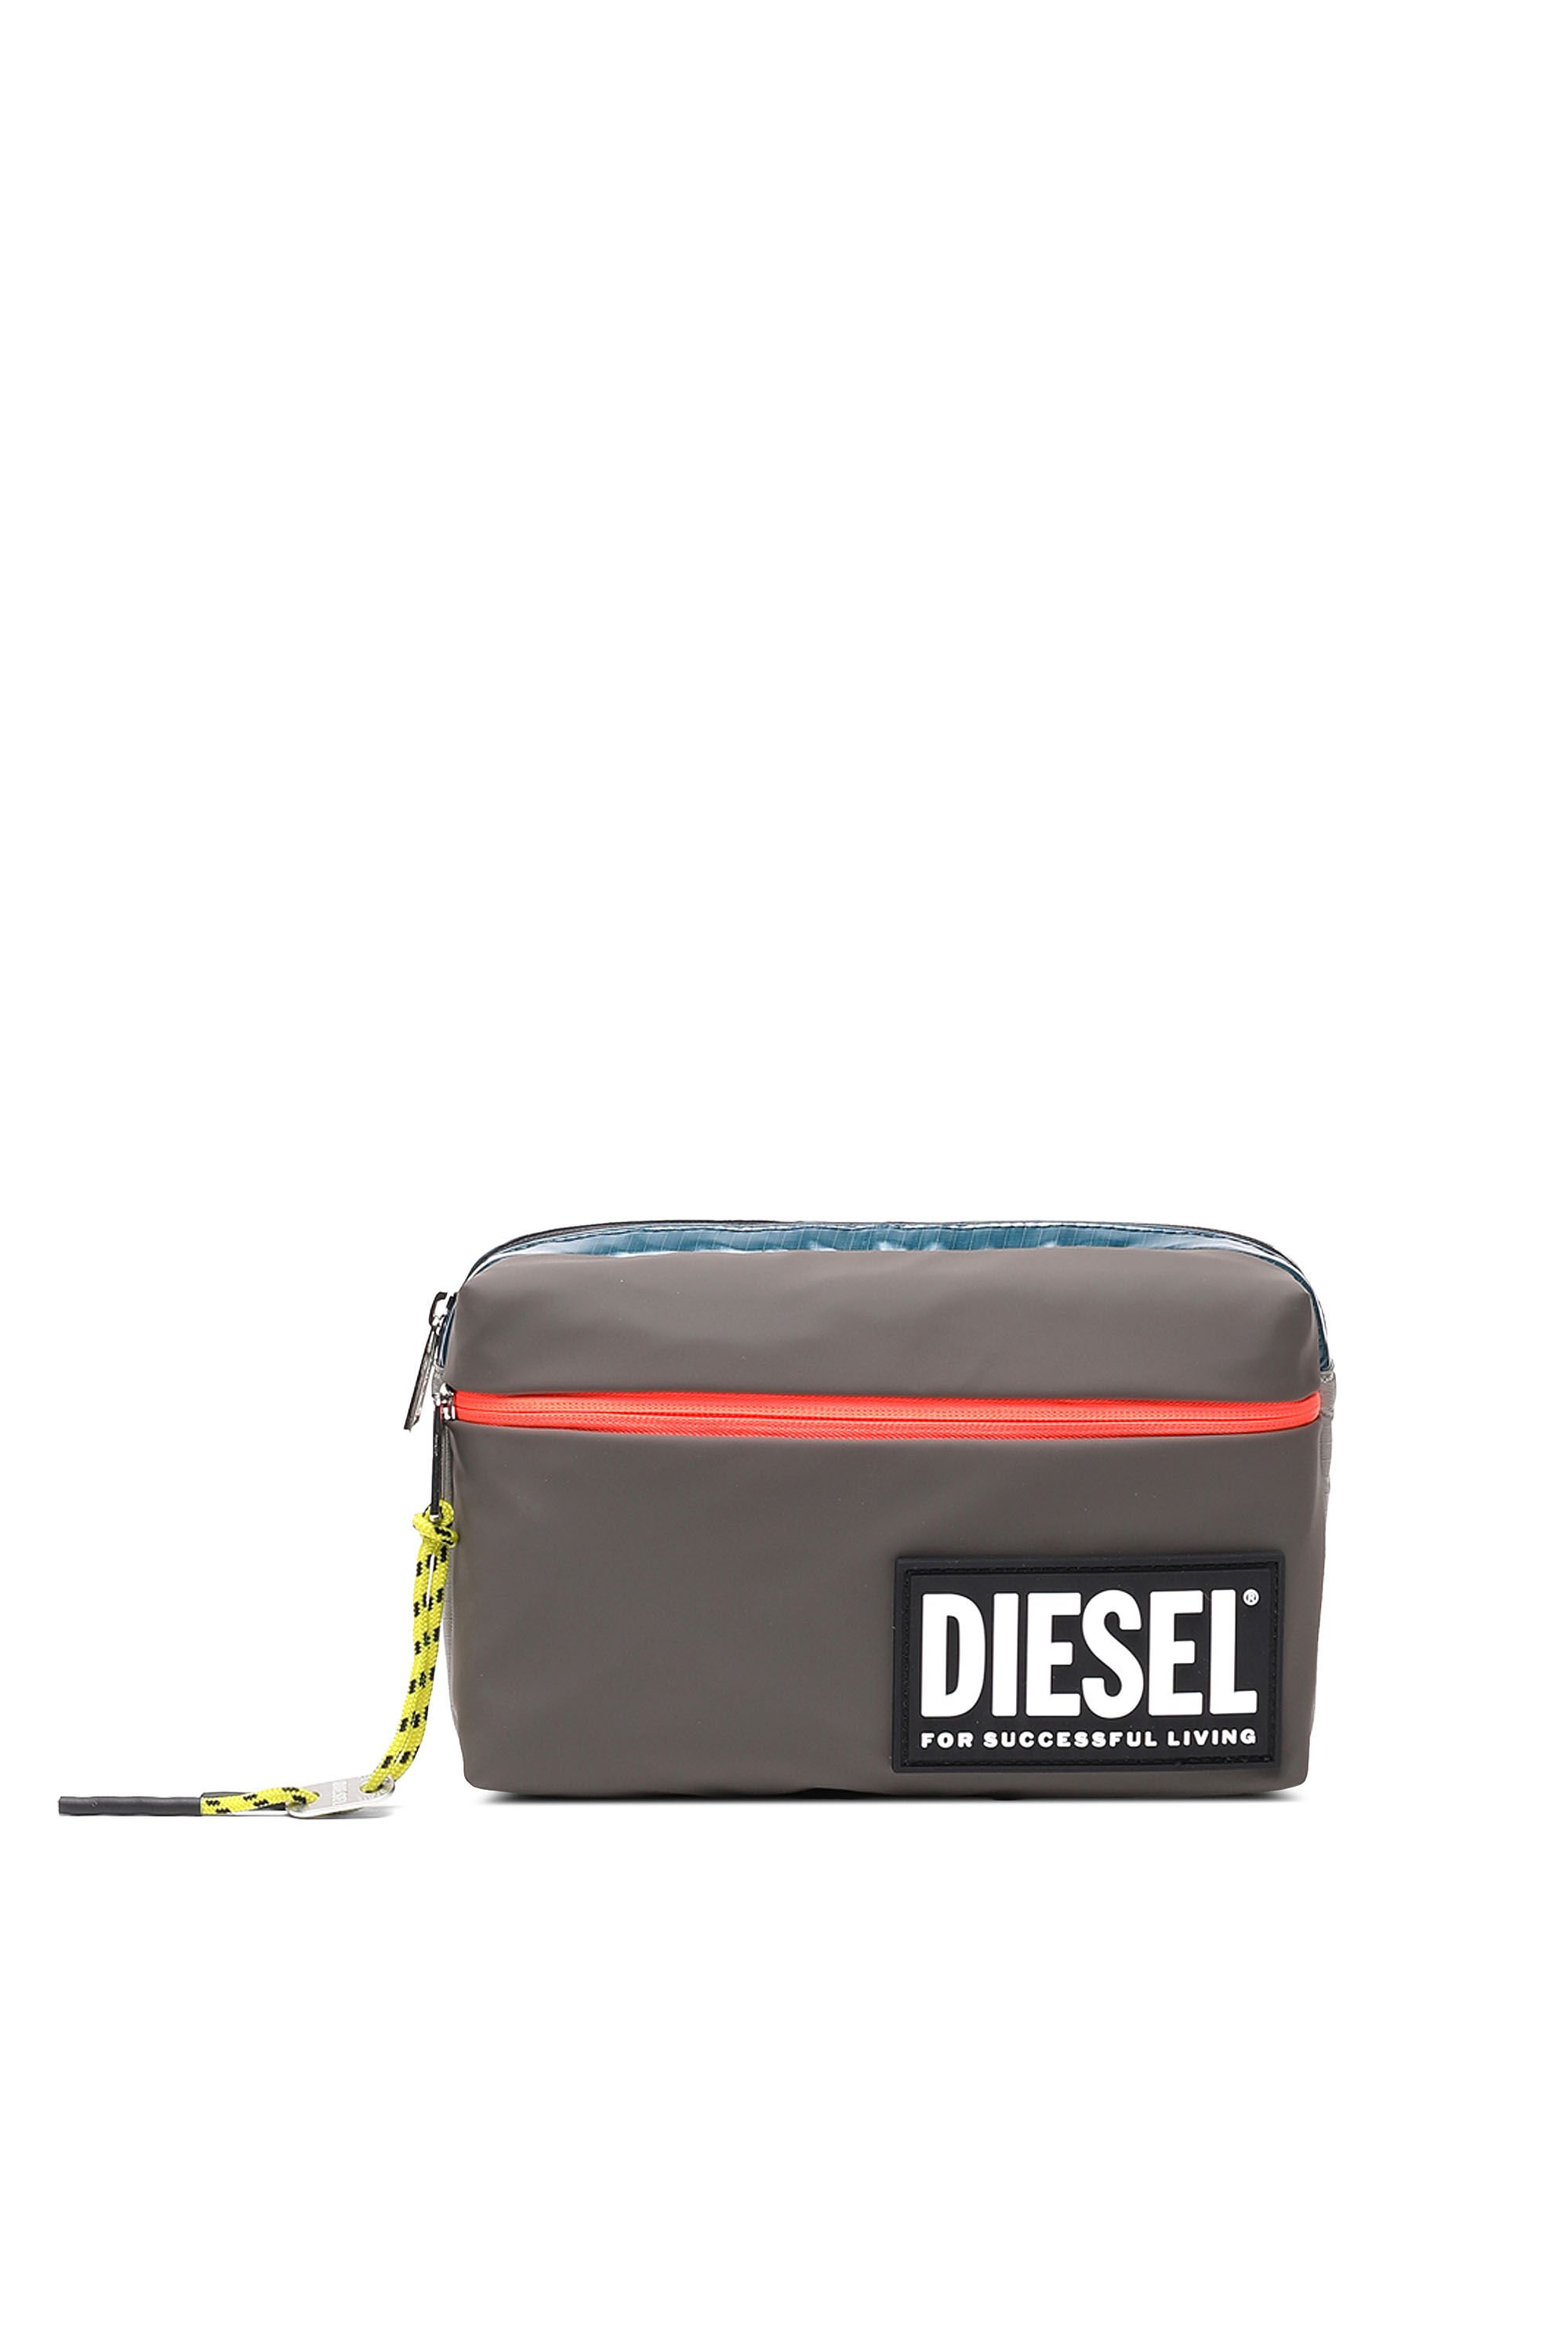 Diesel - BELTYO, Brown - Image 2